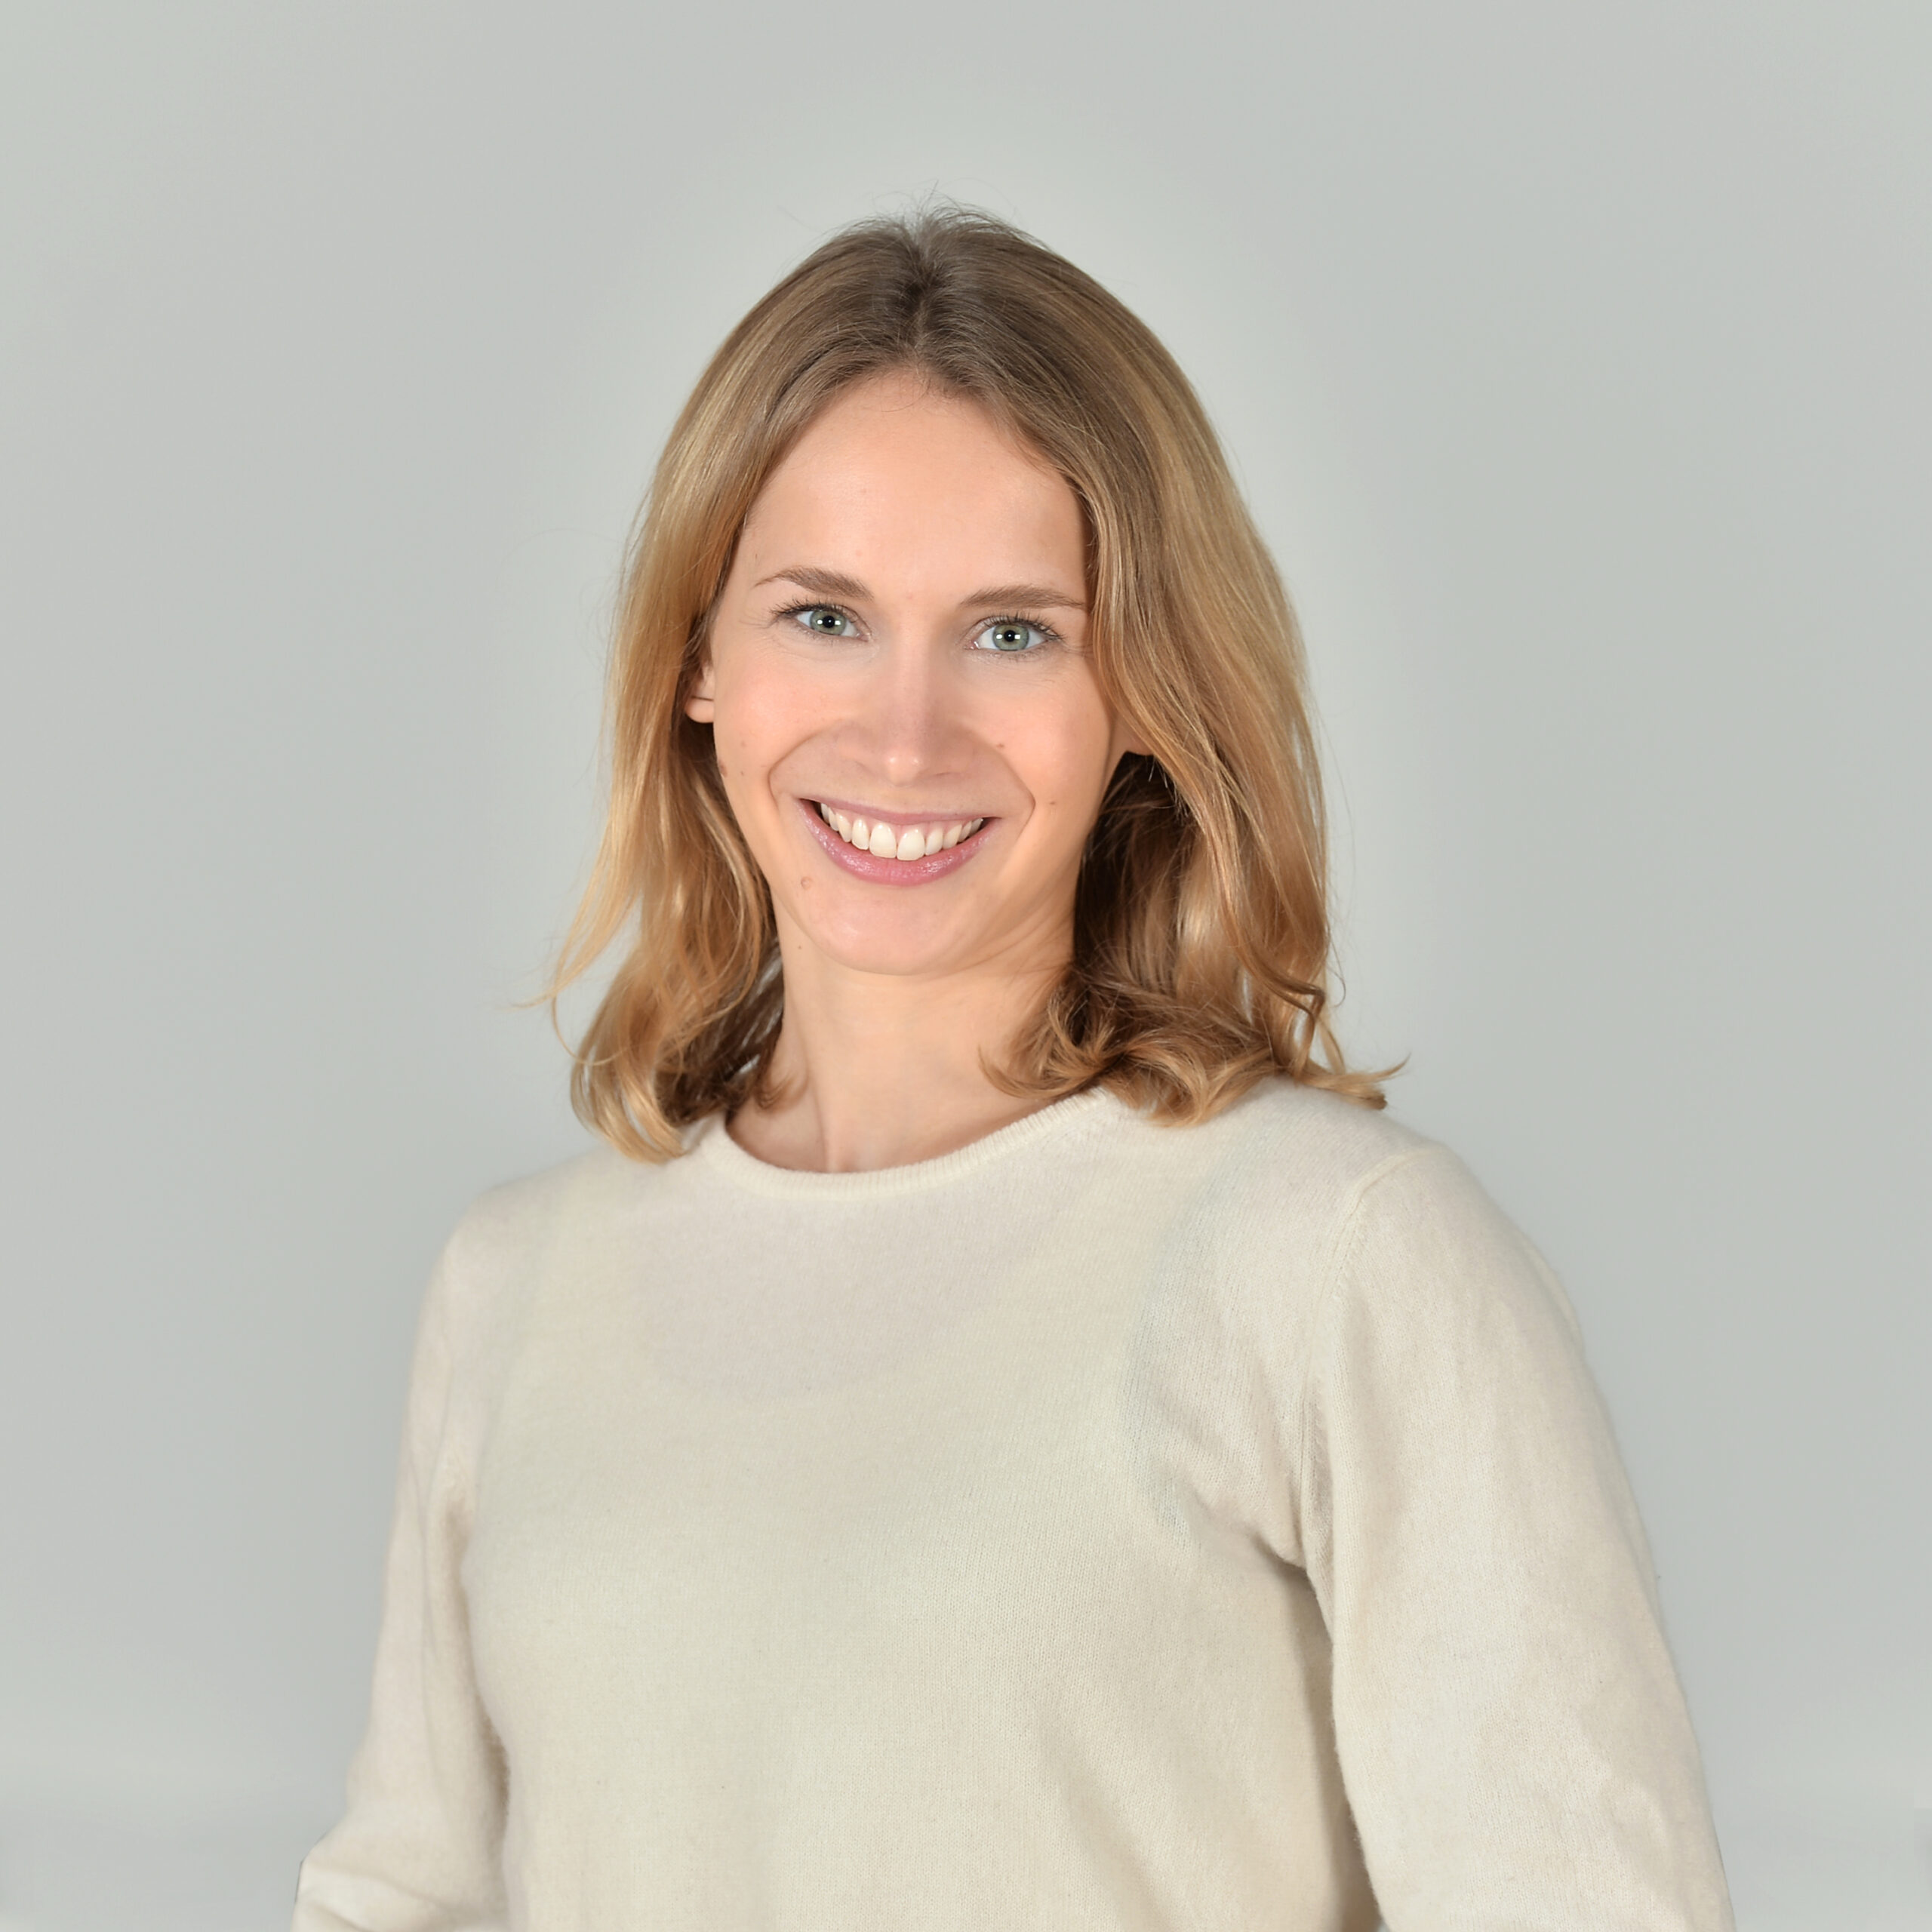 Profilbild von Jonna Wolters in einem beige-farbenen Pullover.